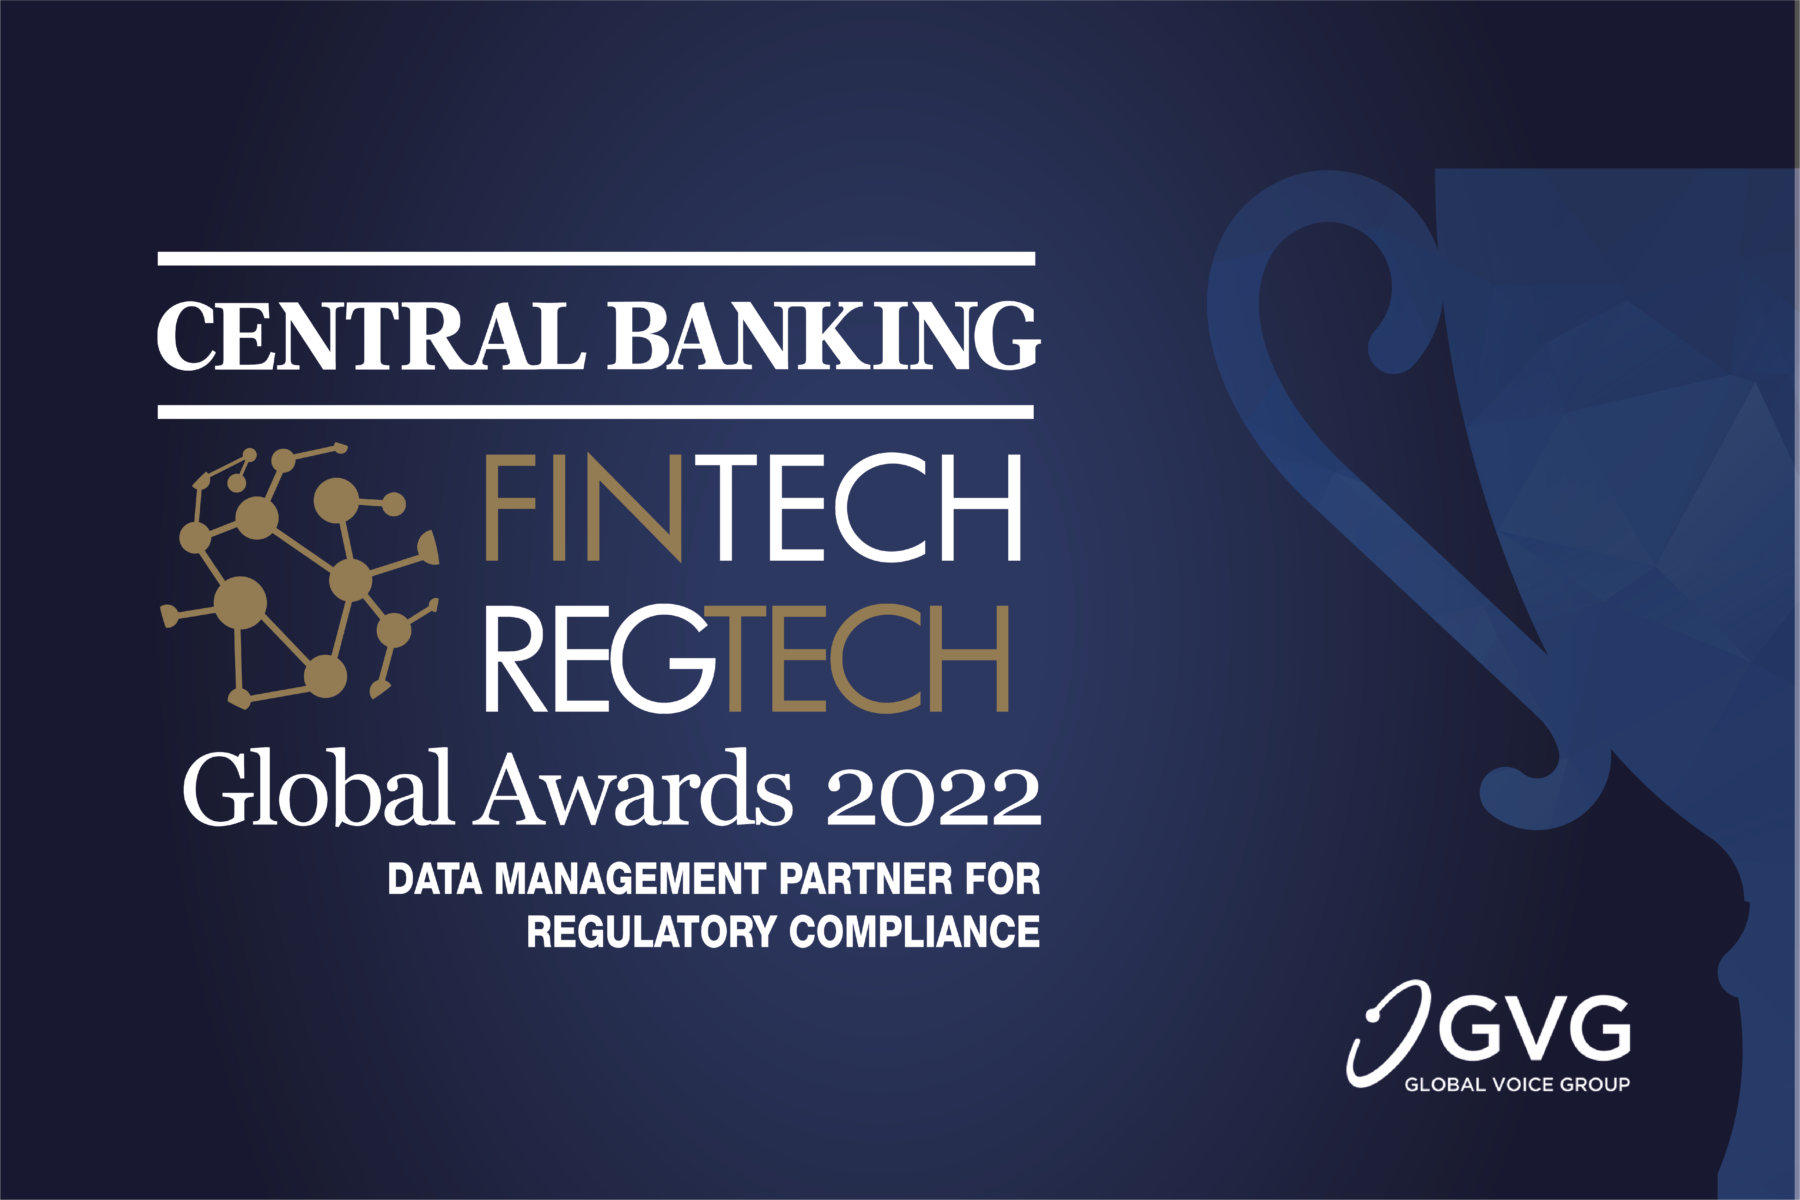 FinTech RegTech Global Awards